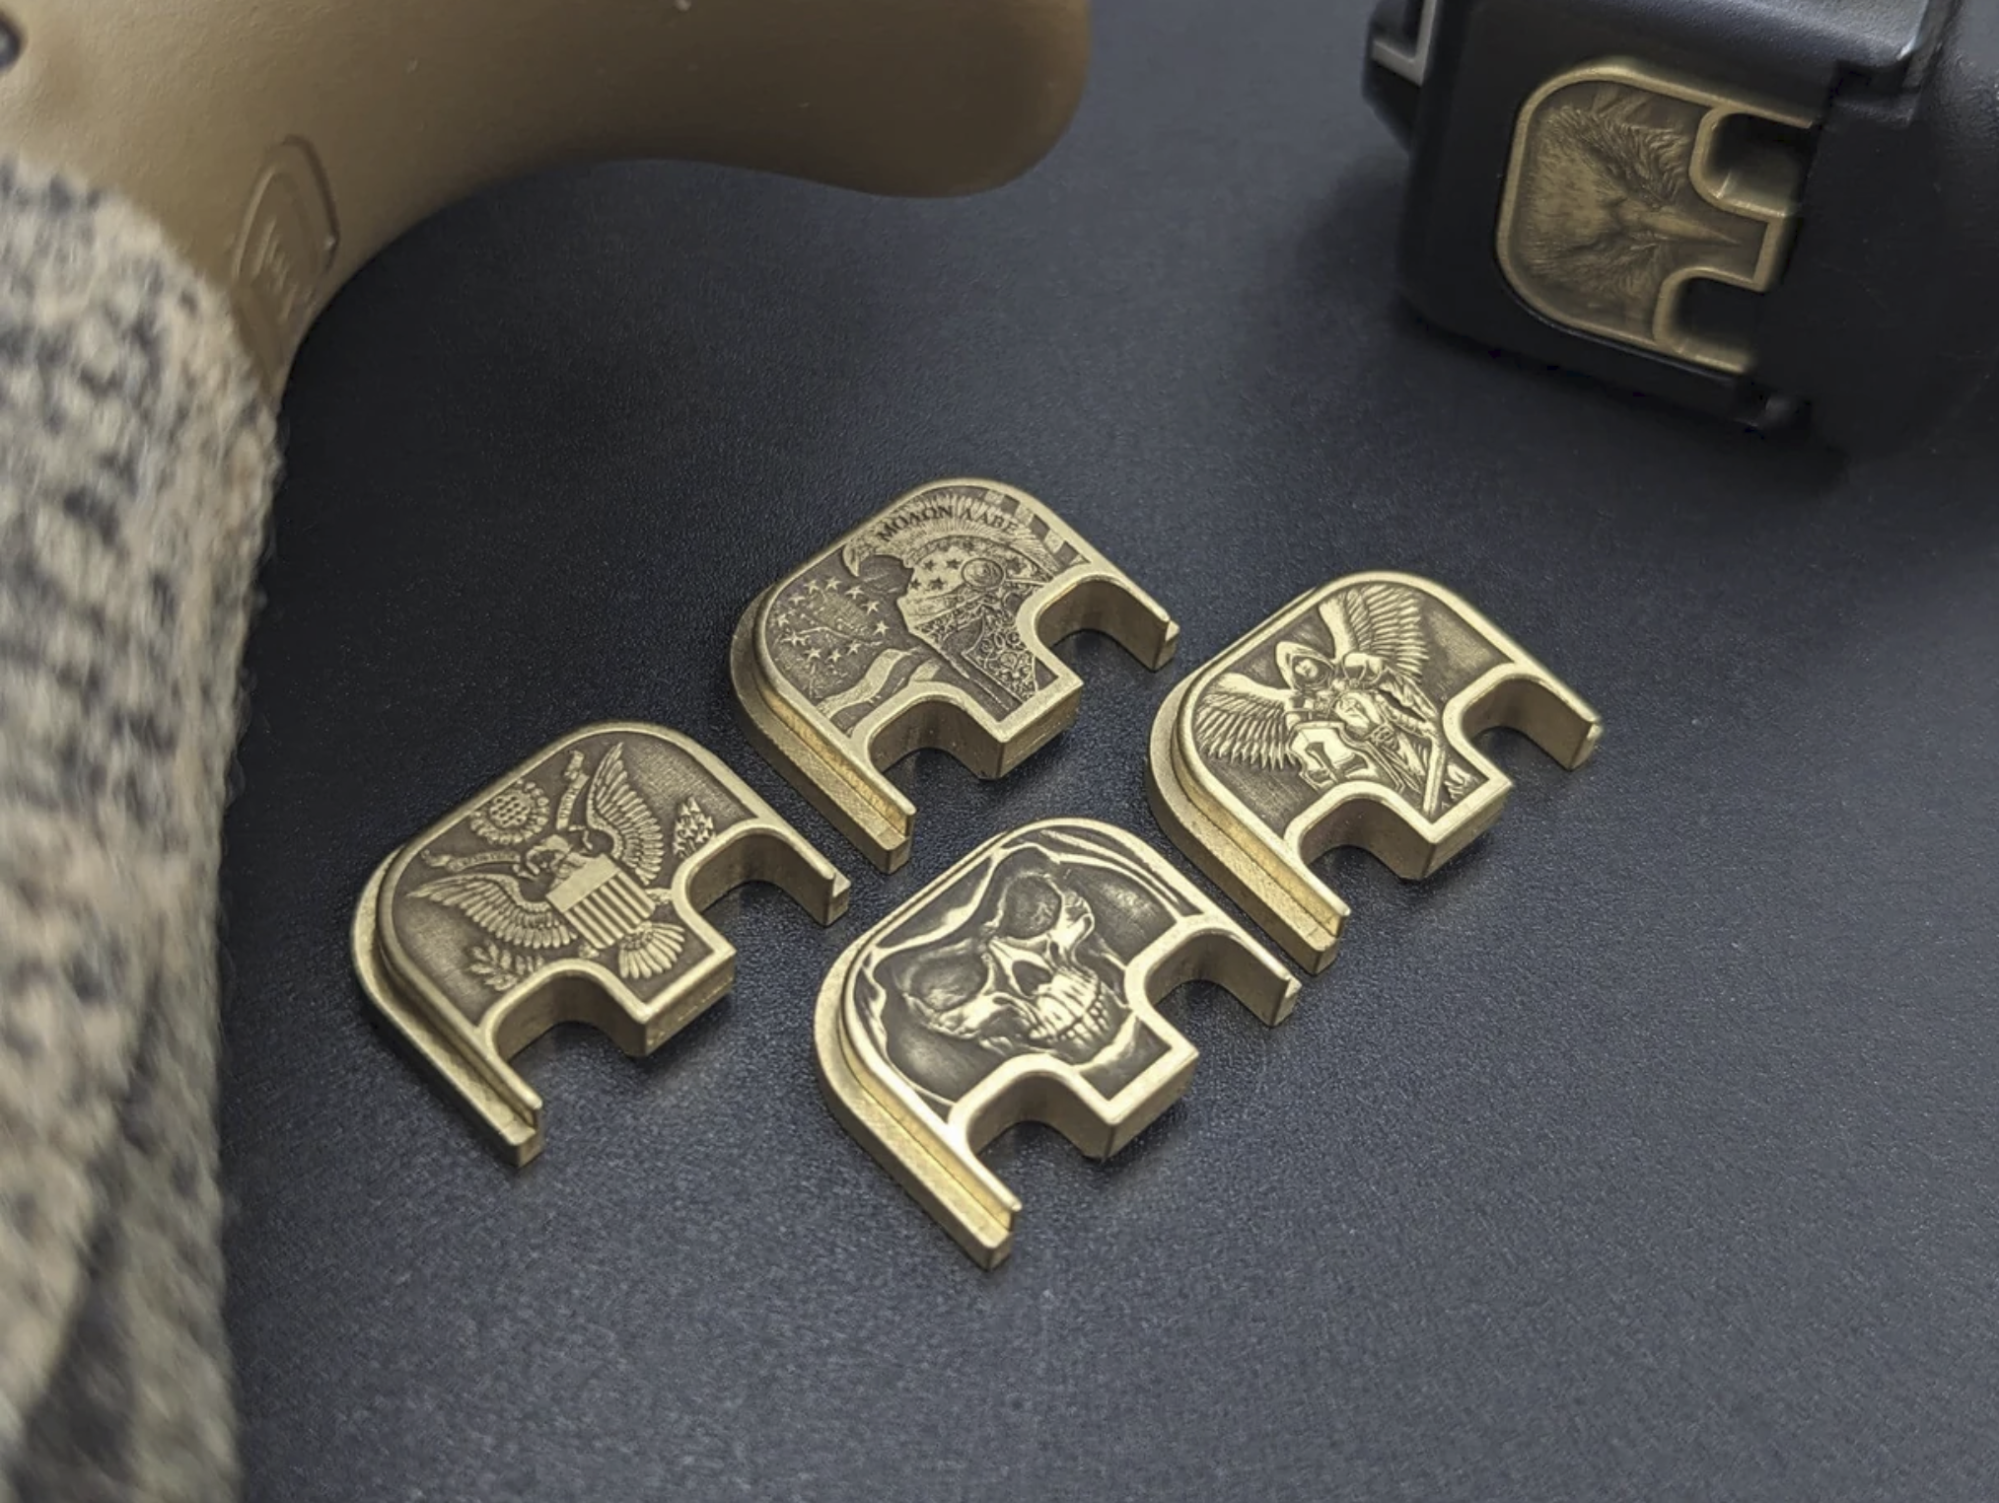 MILSPIN engraved 3D Glock back plates